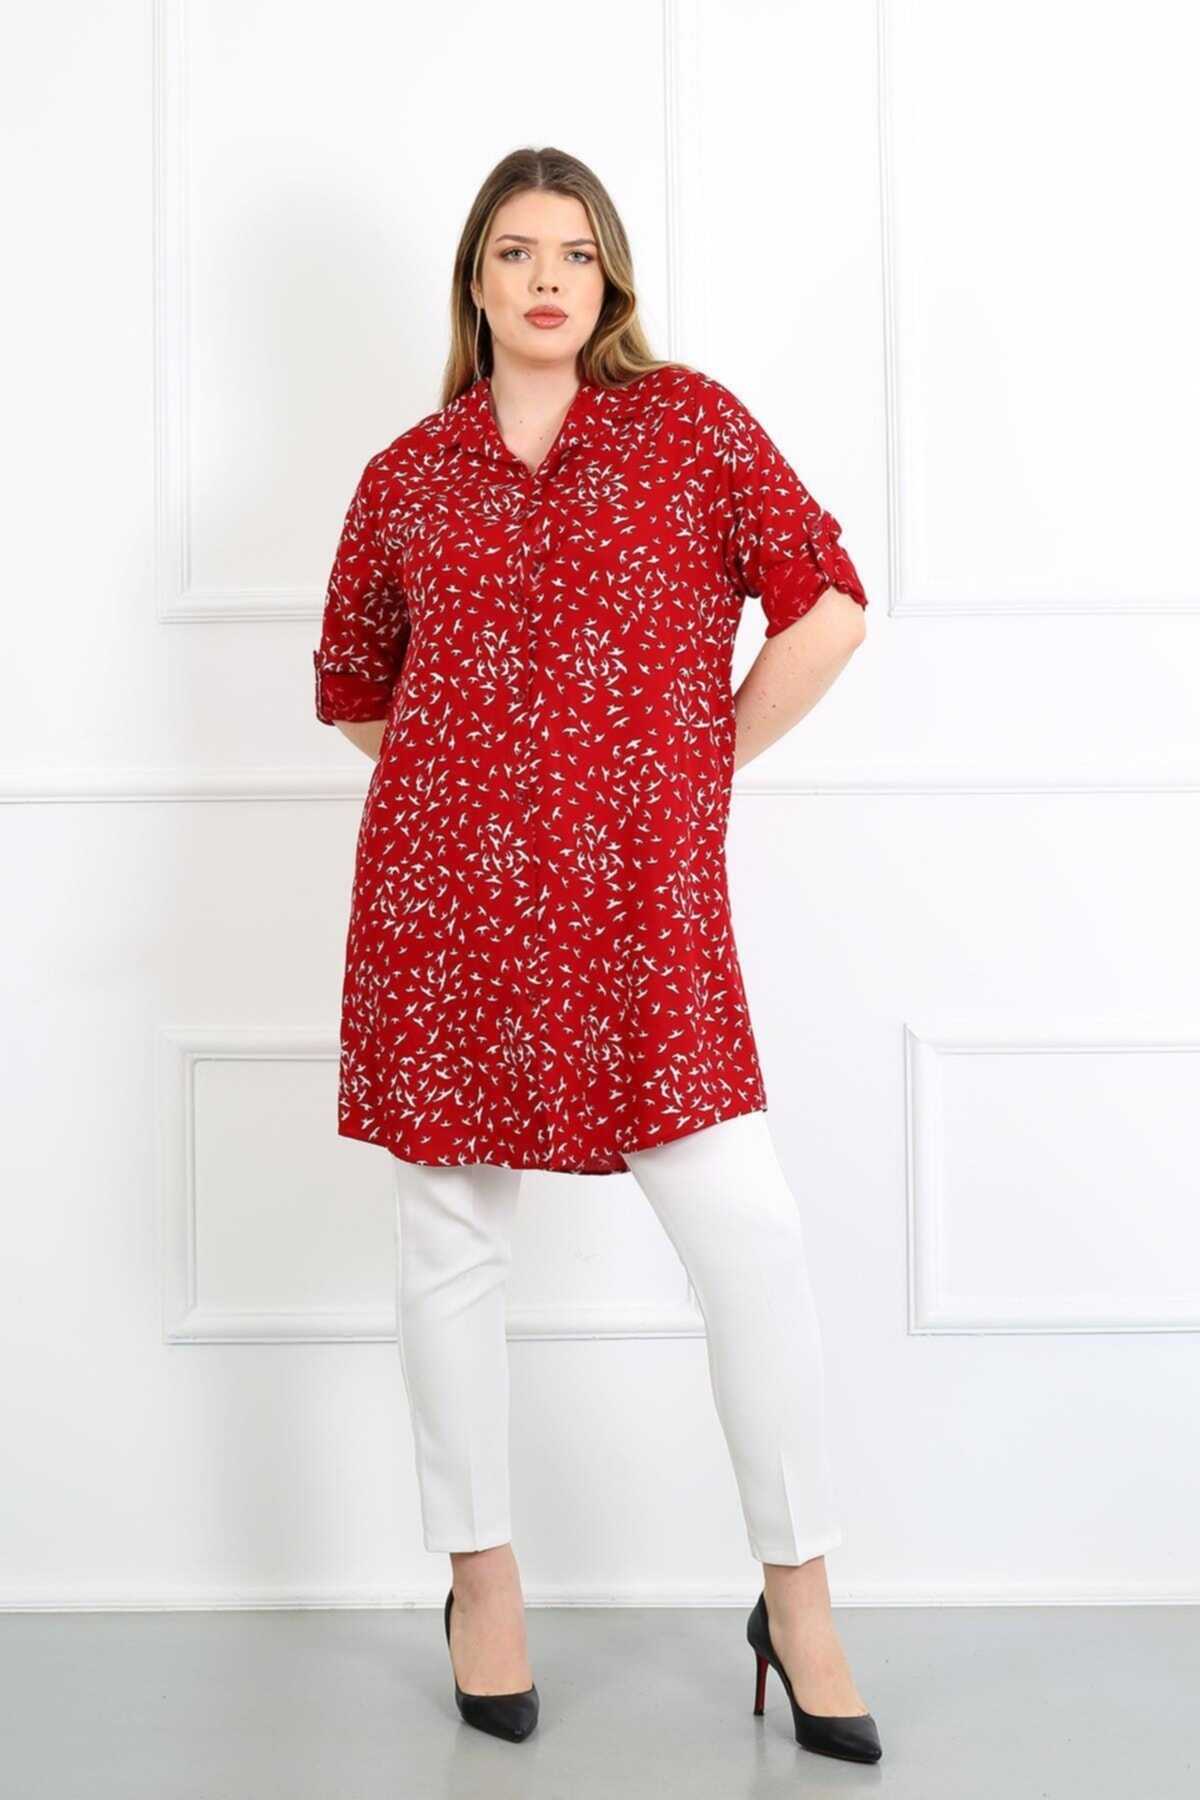 تونیک سایز بزرگ آستین تاشو طرح دار زنانه قرمز برند By Alba Collection